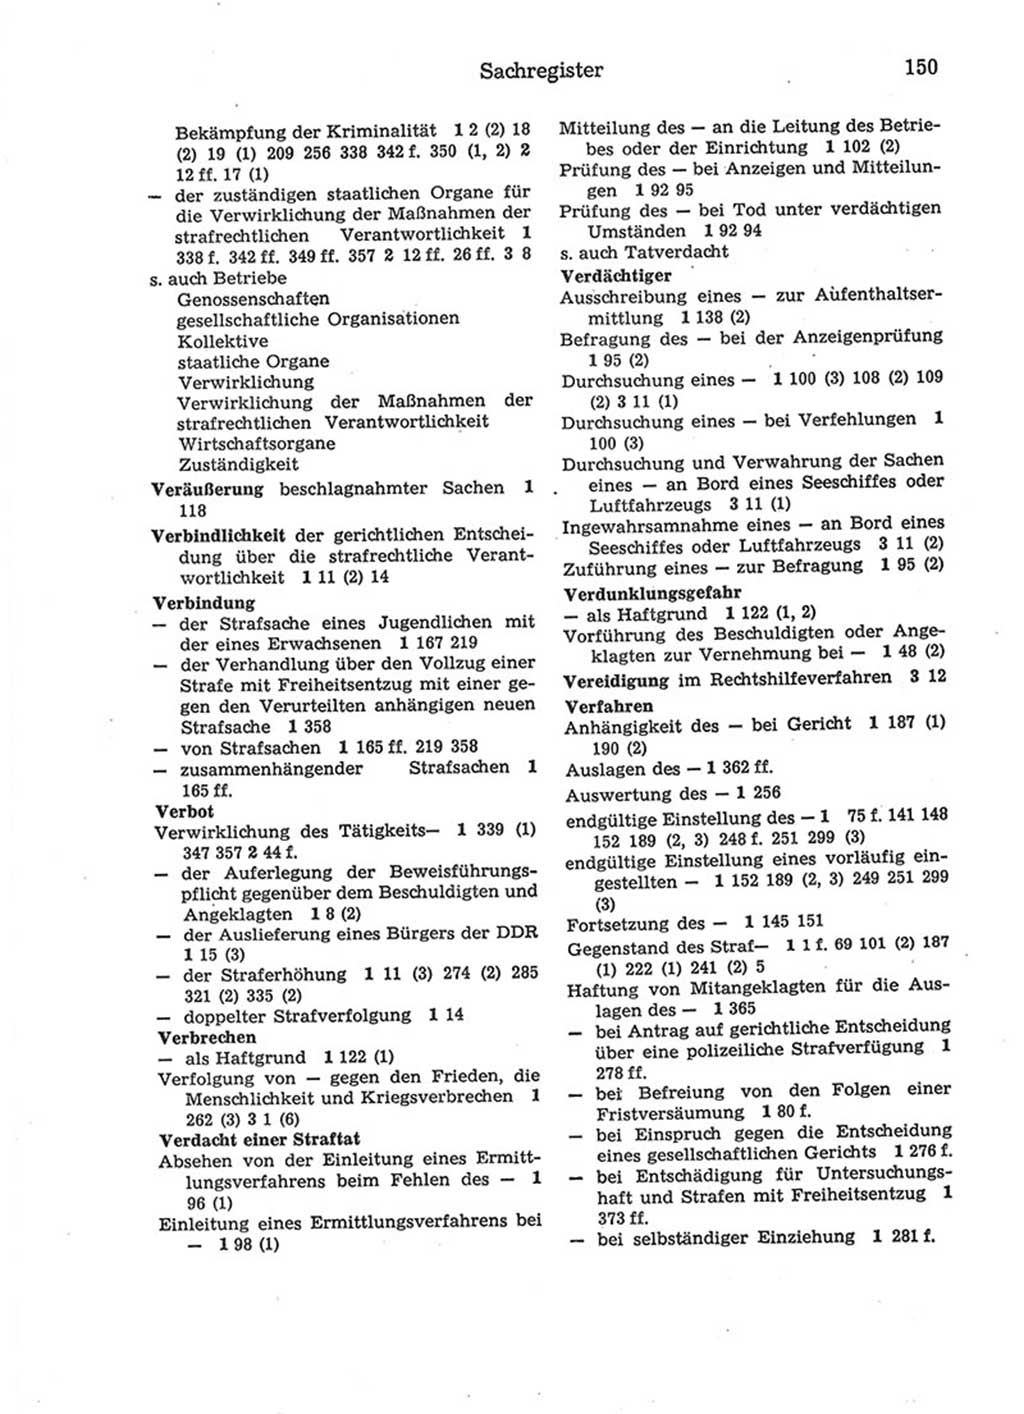 Strafprozeßordnung (StPO) der Deutschen Demokratischen Republik (DDR) 1975, Seite 150 (StPO DDR 1974, S. 150)